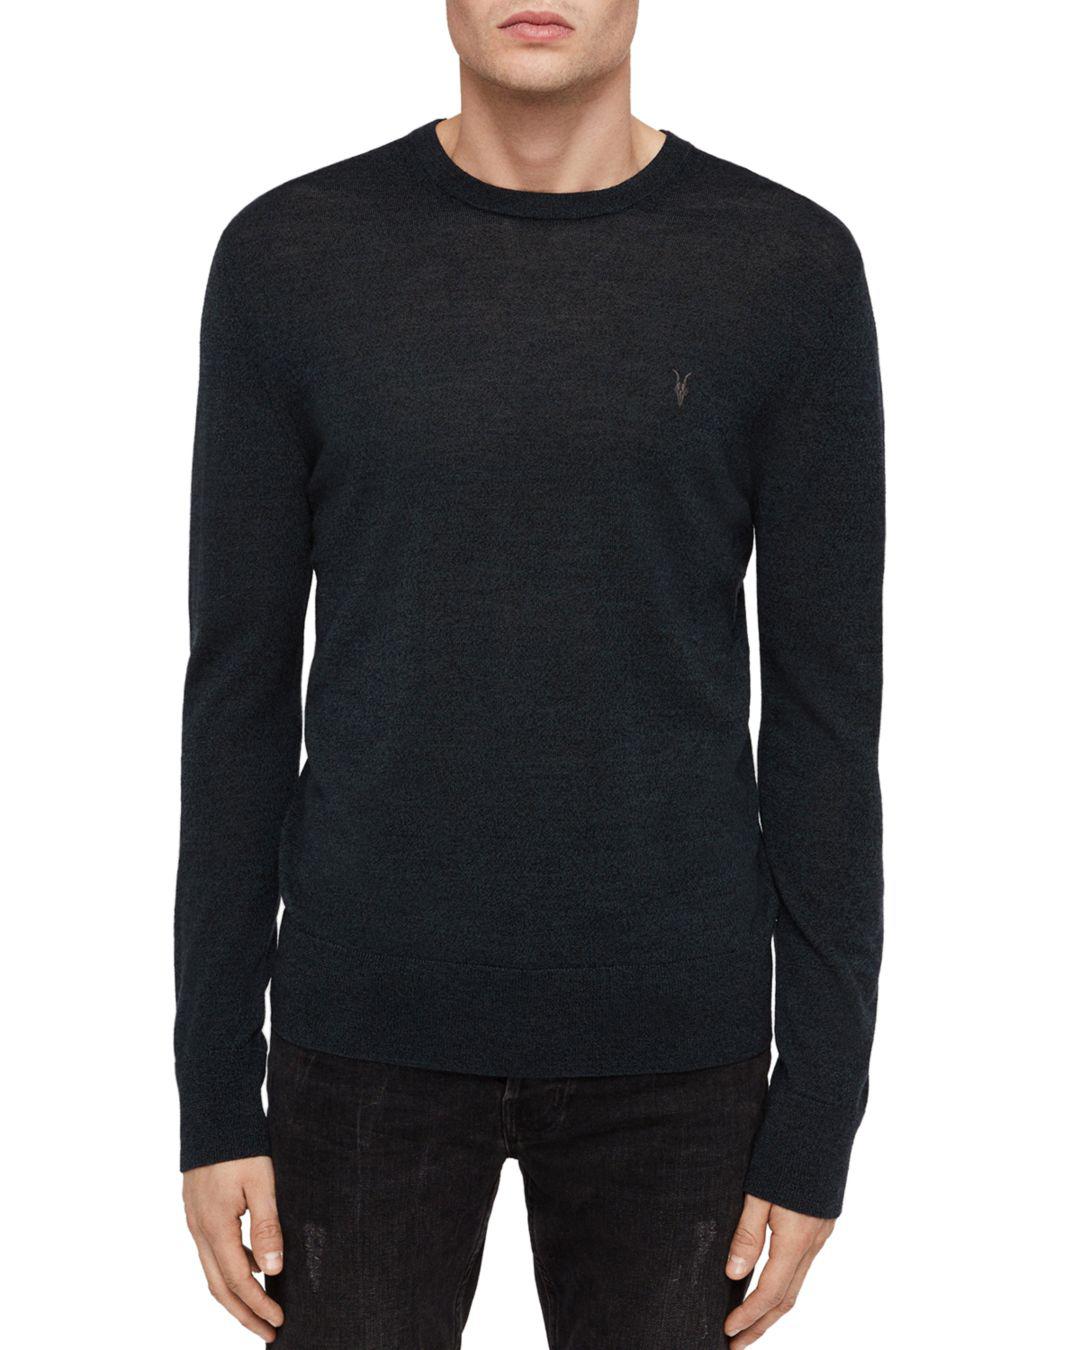 Lyst - AllSaints Mode Merino Sweater for Men